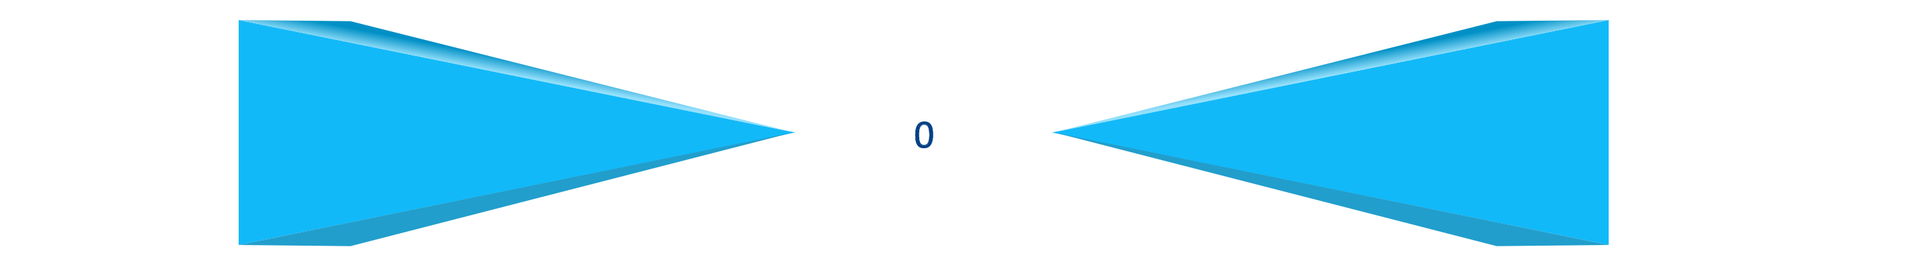 Na ilustracji są dwa niebieskie ostrosłupy. Usytuowane są poziomo naprzeciwko siebie od strony wierzchołków. Pomiędzy nimi jest 0.  